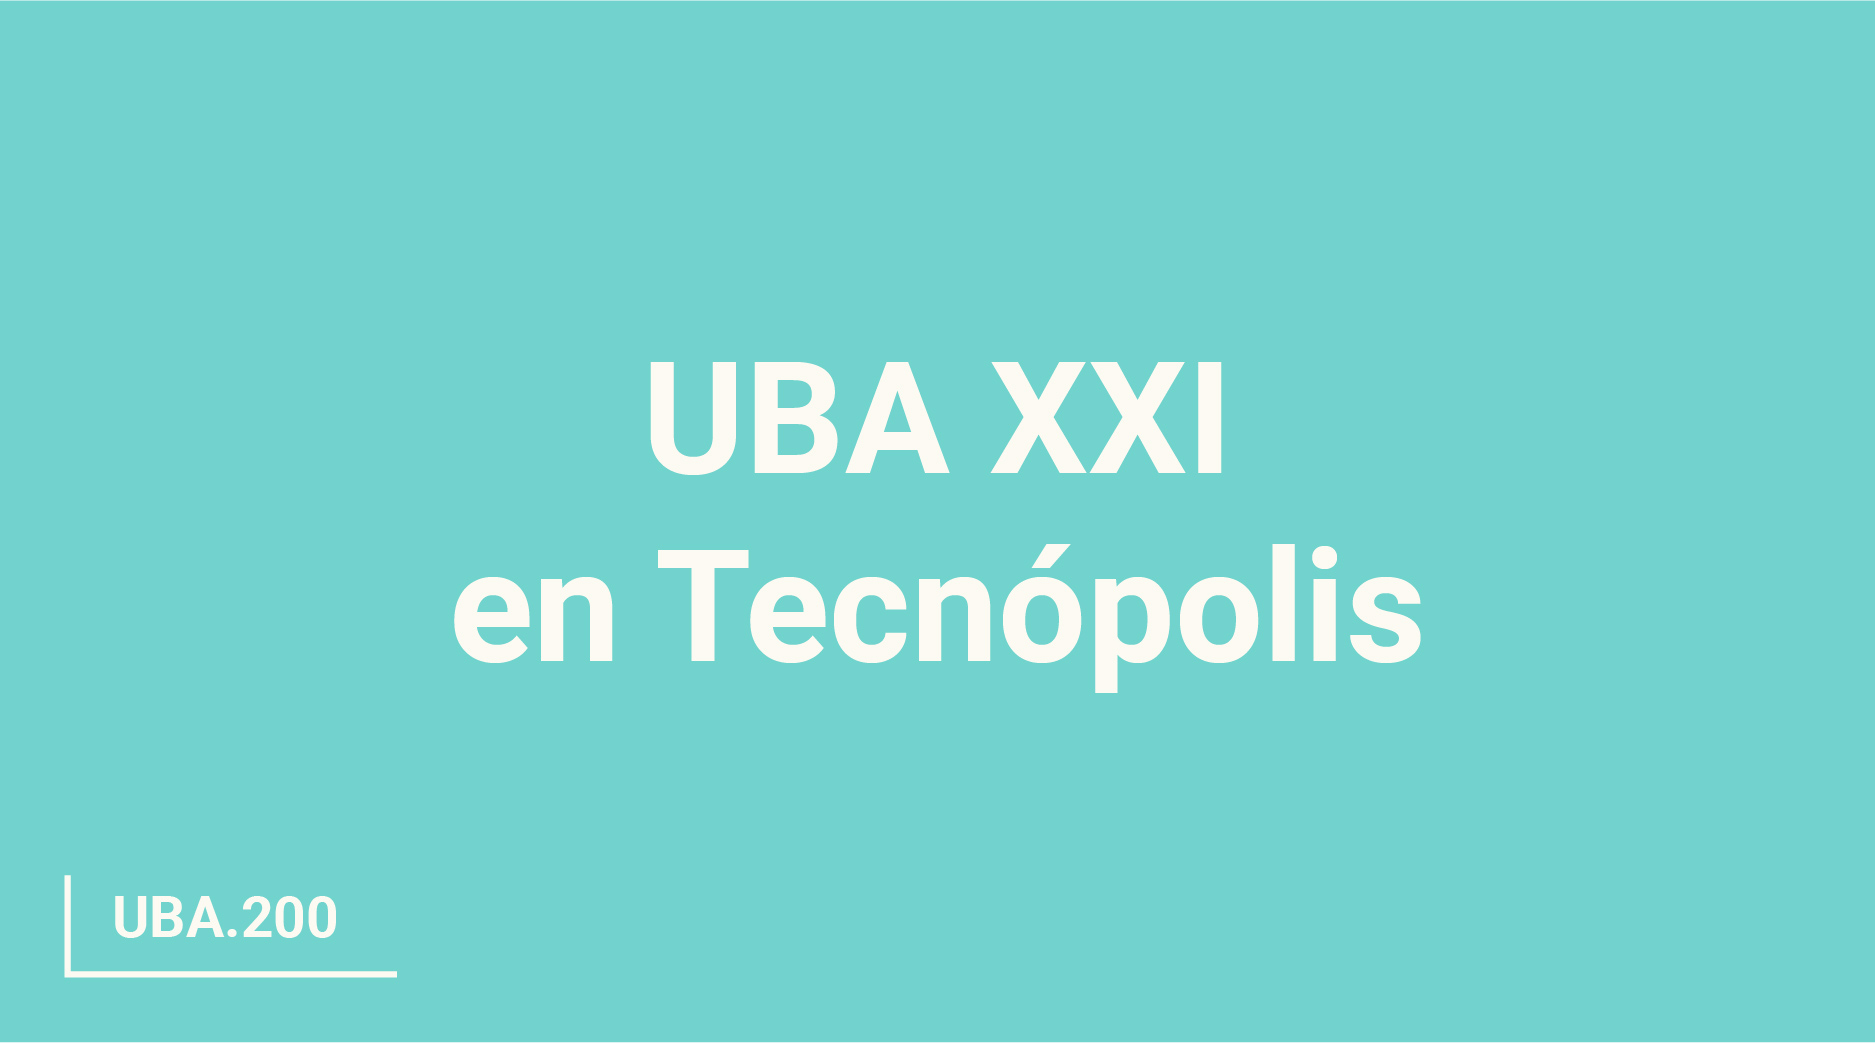 1875px x 1043px - UBA XXI en TecnÃ³polis - ubaxxi